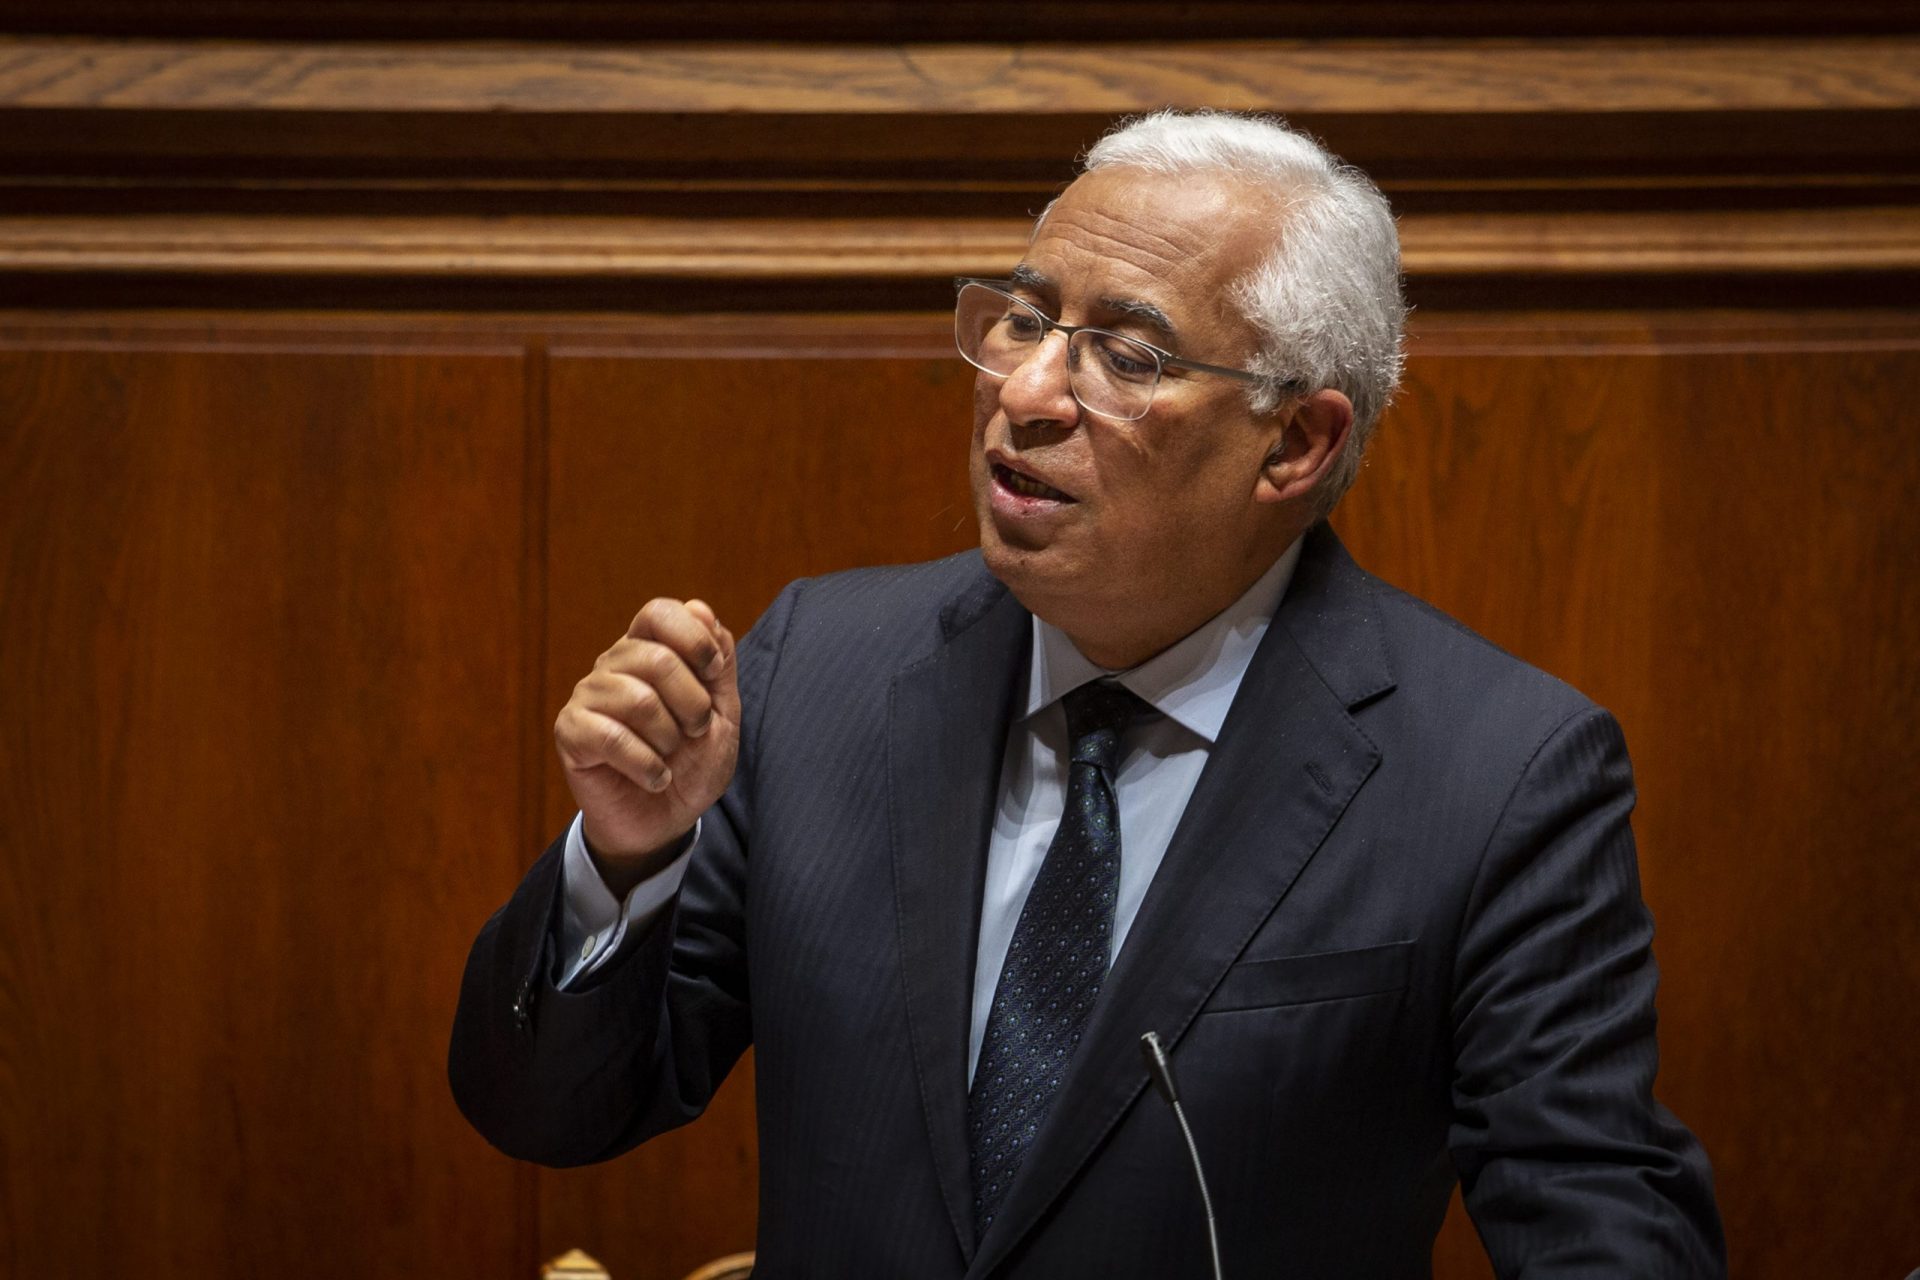 Costa regressa ao Parlamento para primeiro debate sobre política geral